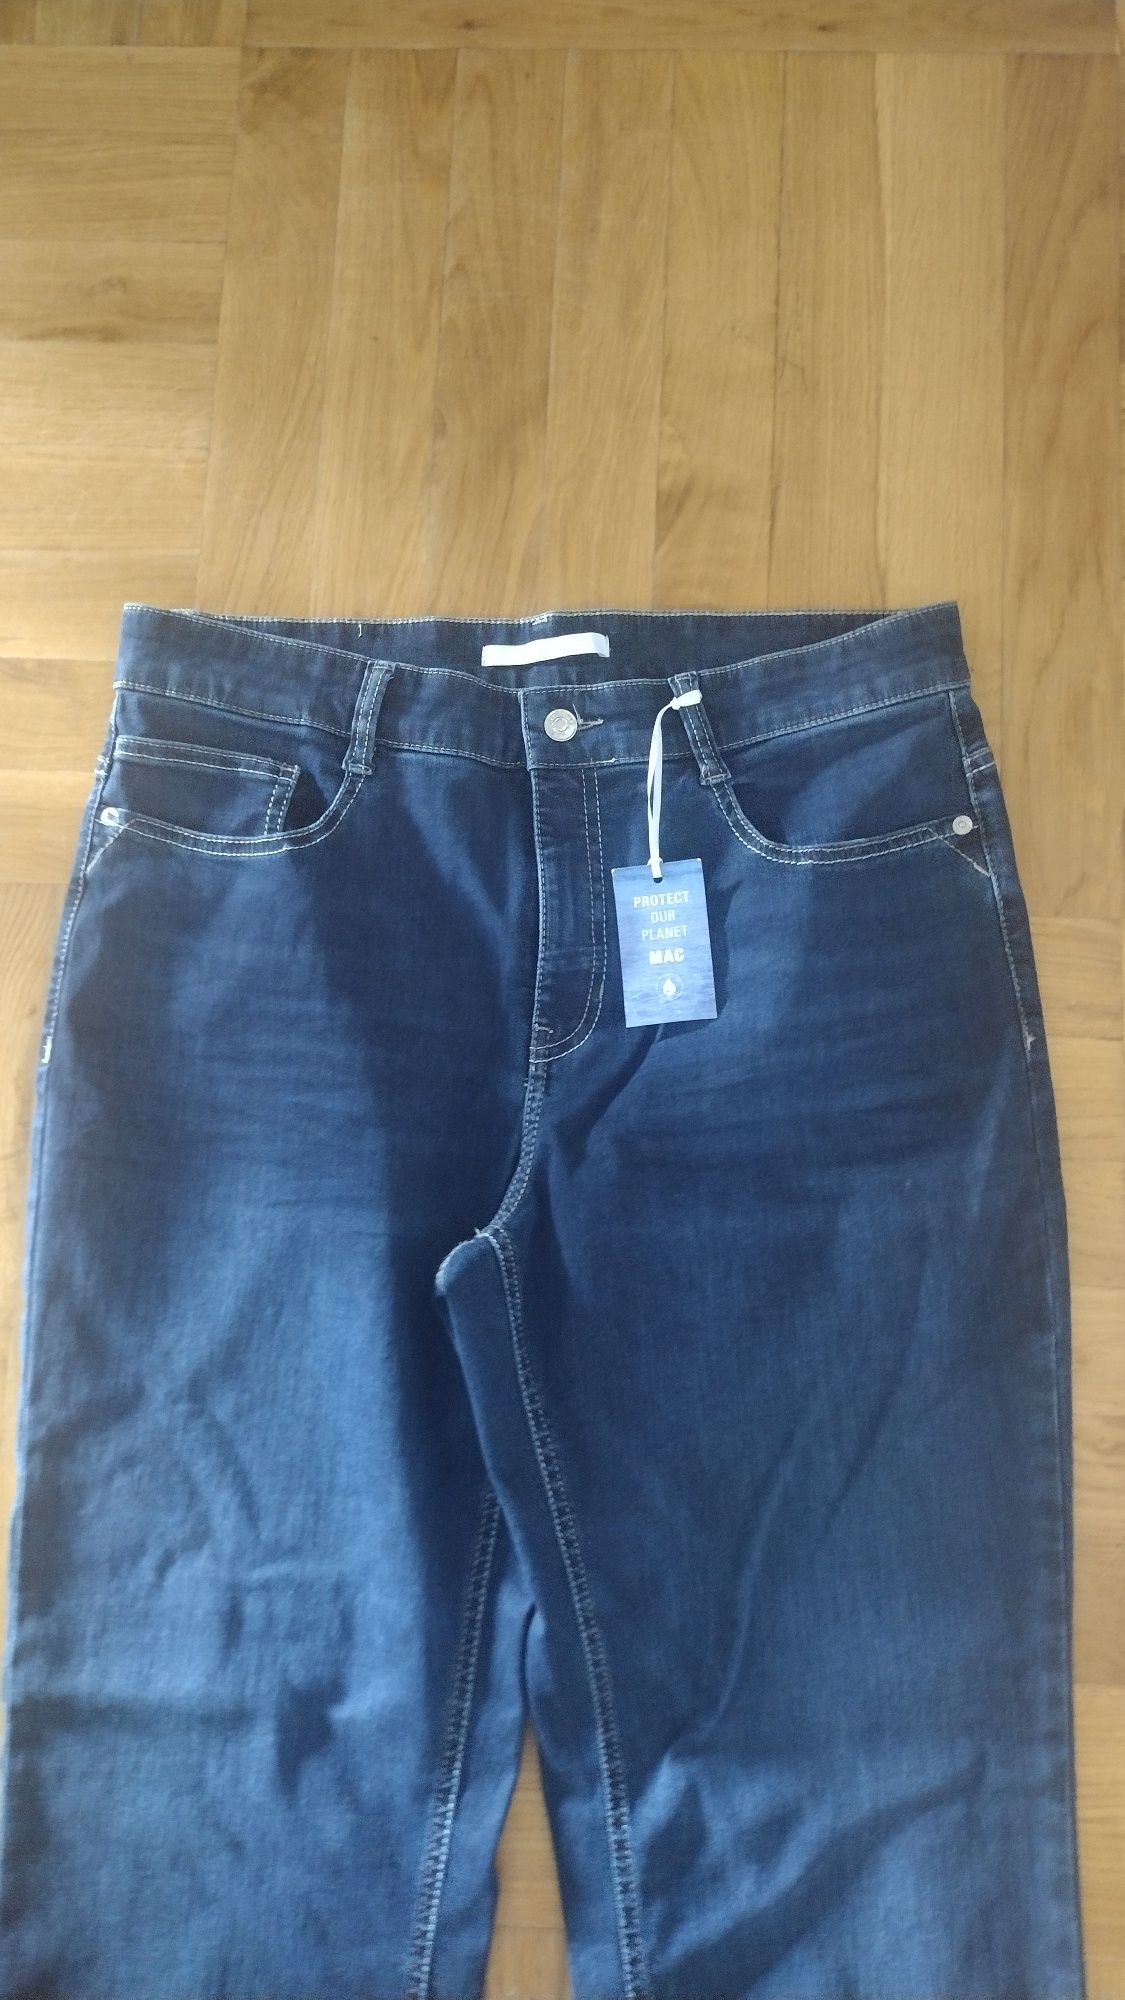 Spodnie jeansowe Mac nowe, rozmiar 44